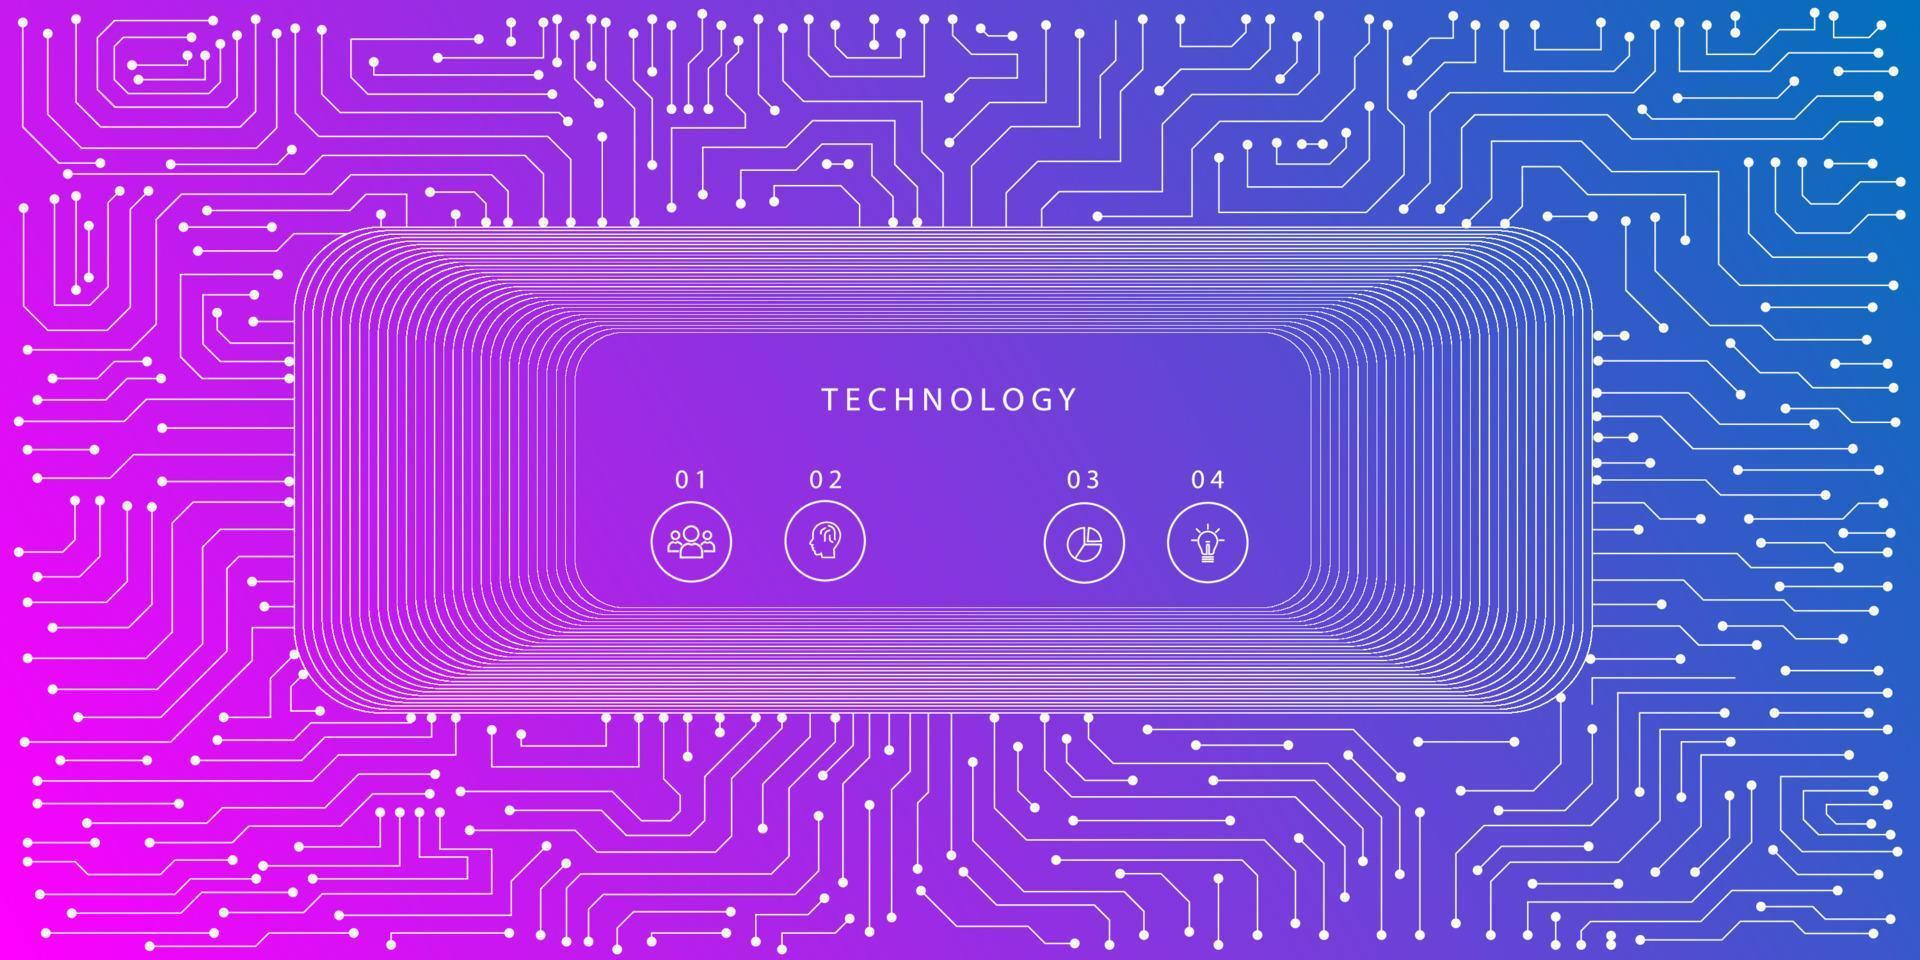 vetor de placa de circuito eletrônico de chip de computador para conceito de tecnologia e finanças e educação para o futuro